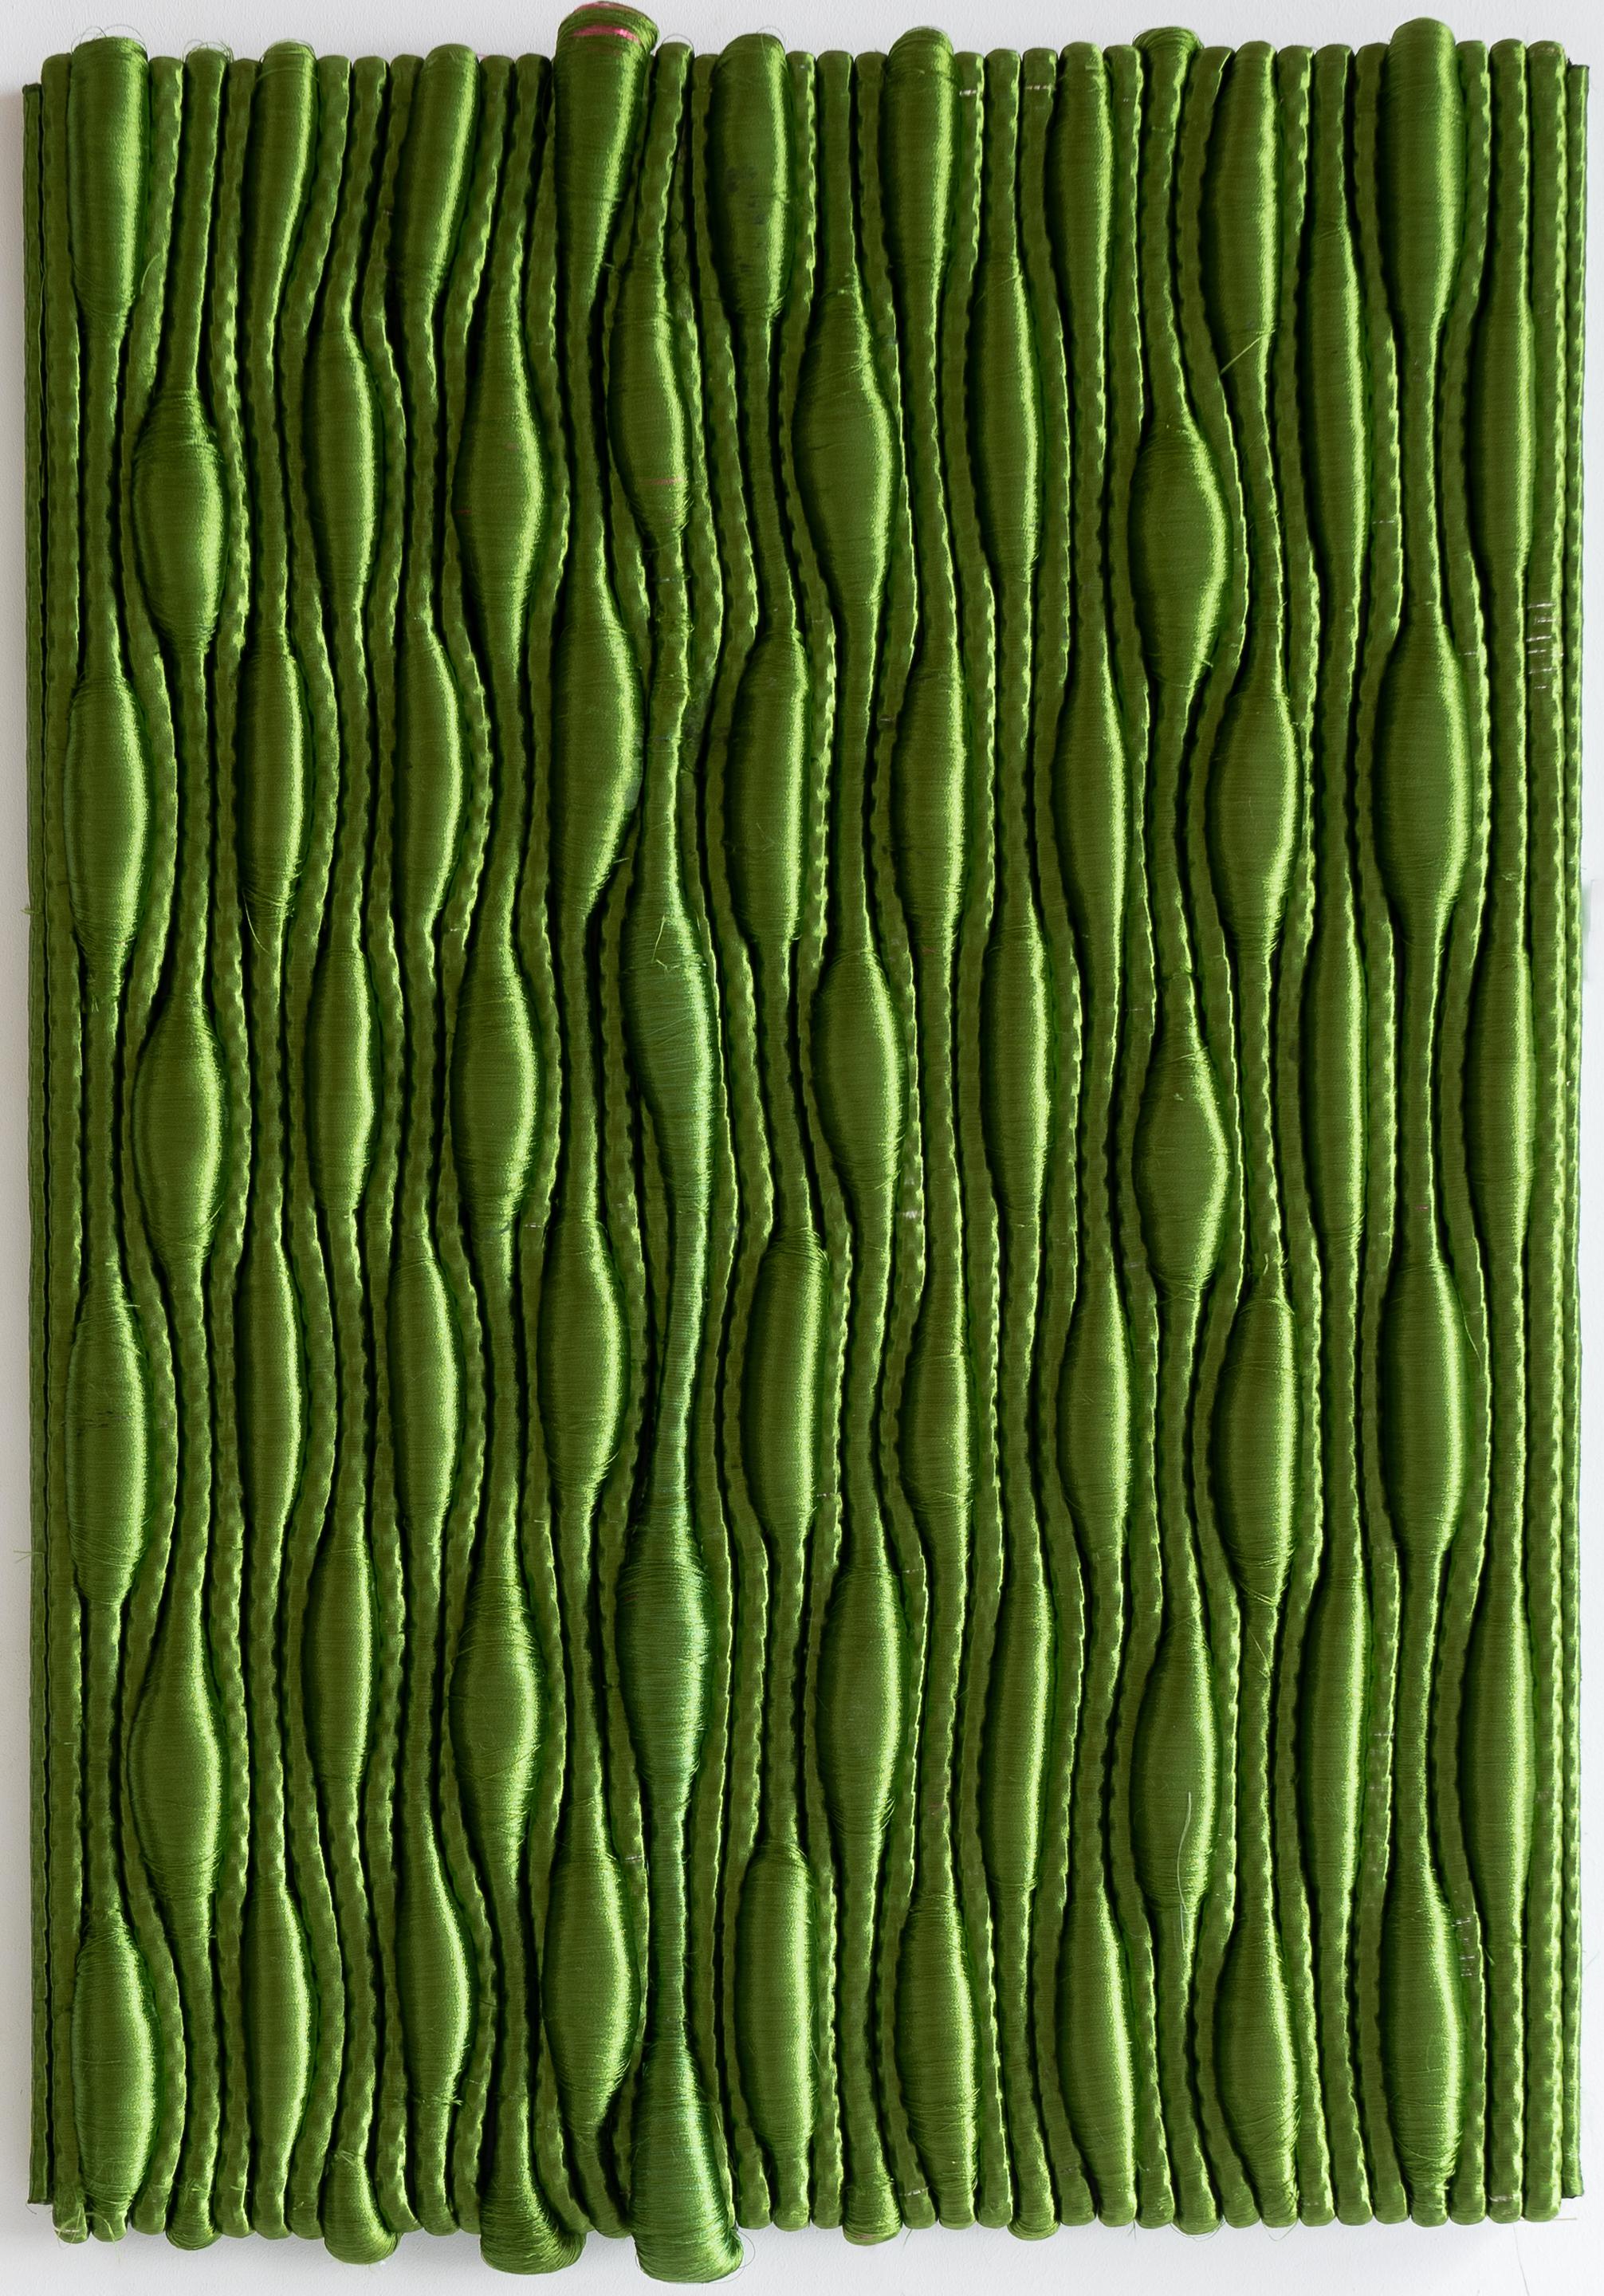 Vertical Garden Zantedeschia - Green - Mixed Media Art by Joana Schneider